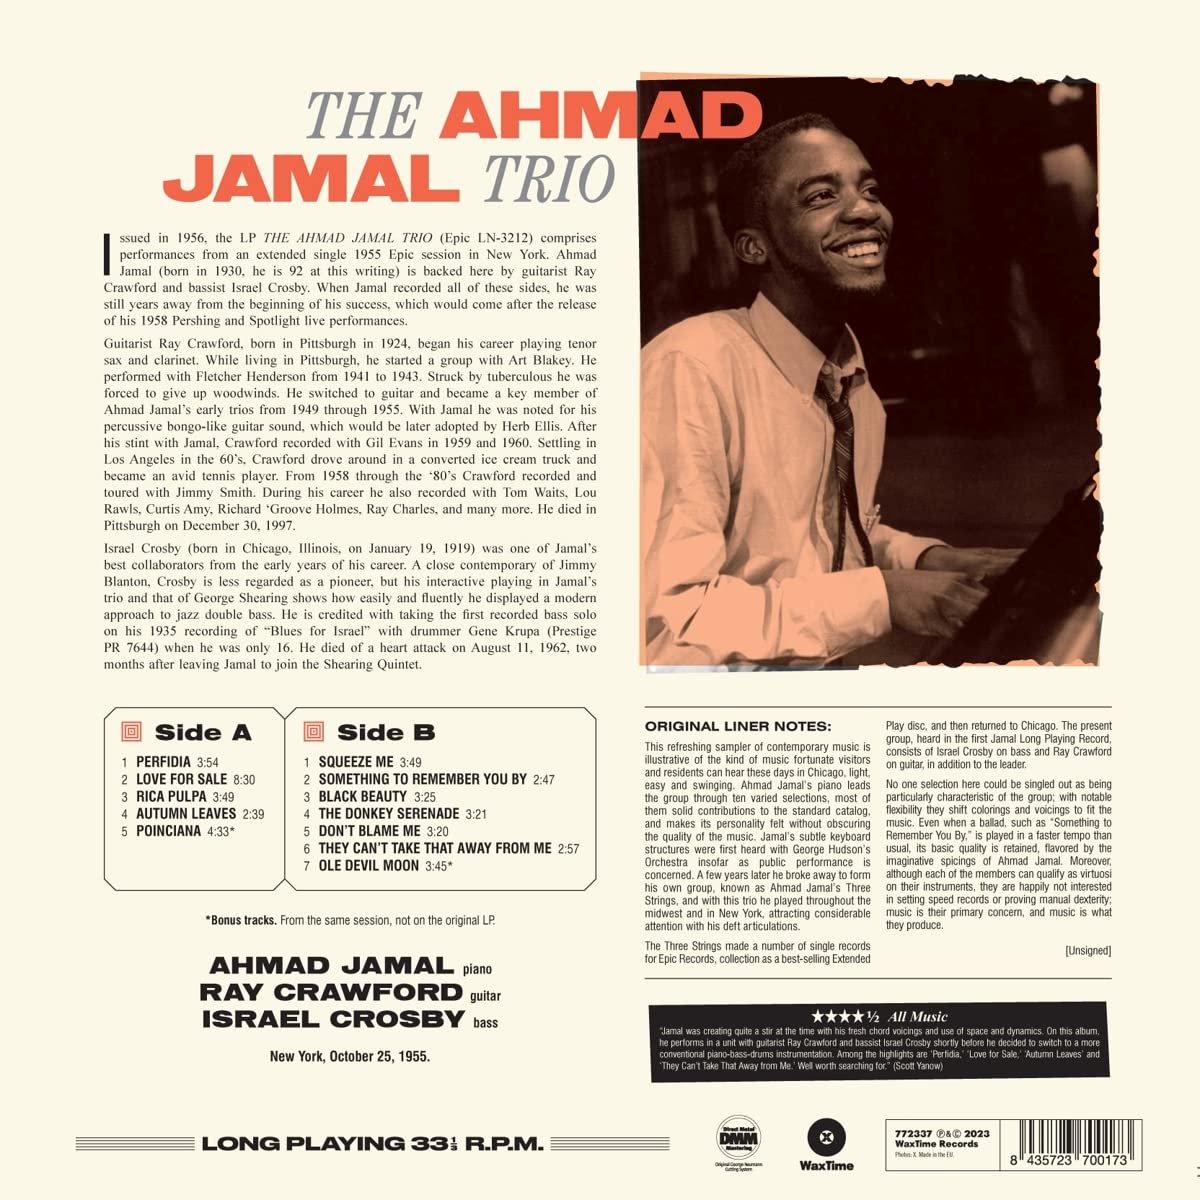 Ahmad Jamal Trio (아마드 자말 트리오) - The Ahmad Jamal Trio [LP]